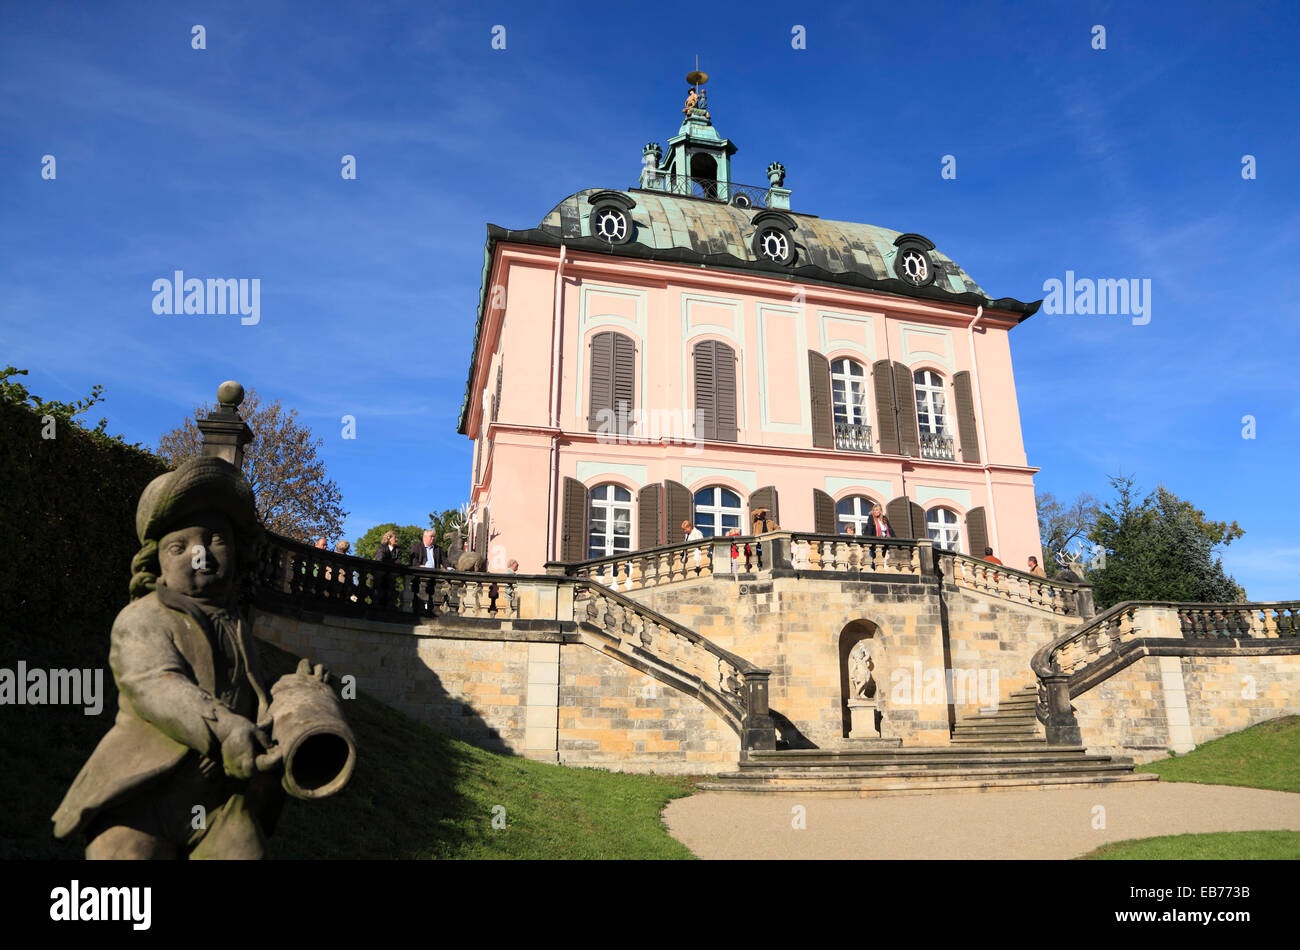 Piccolo castello di fagiano (Fasanenschloesschen) al castello di Moritzburg parco vicino a Dresda, Sassonia, Germania, Europa Foto Stock